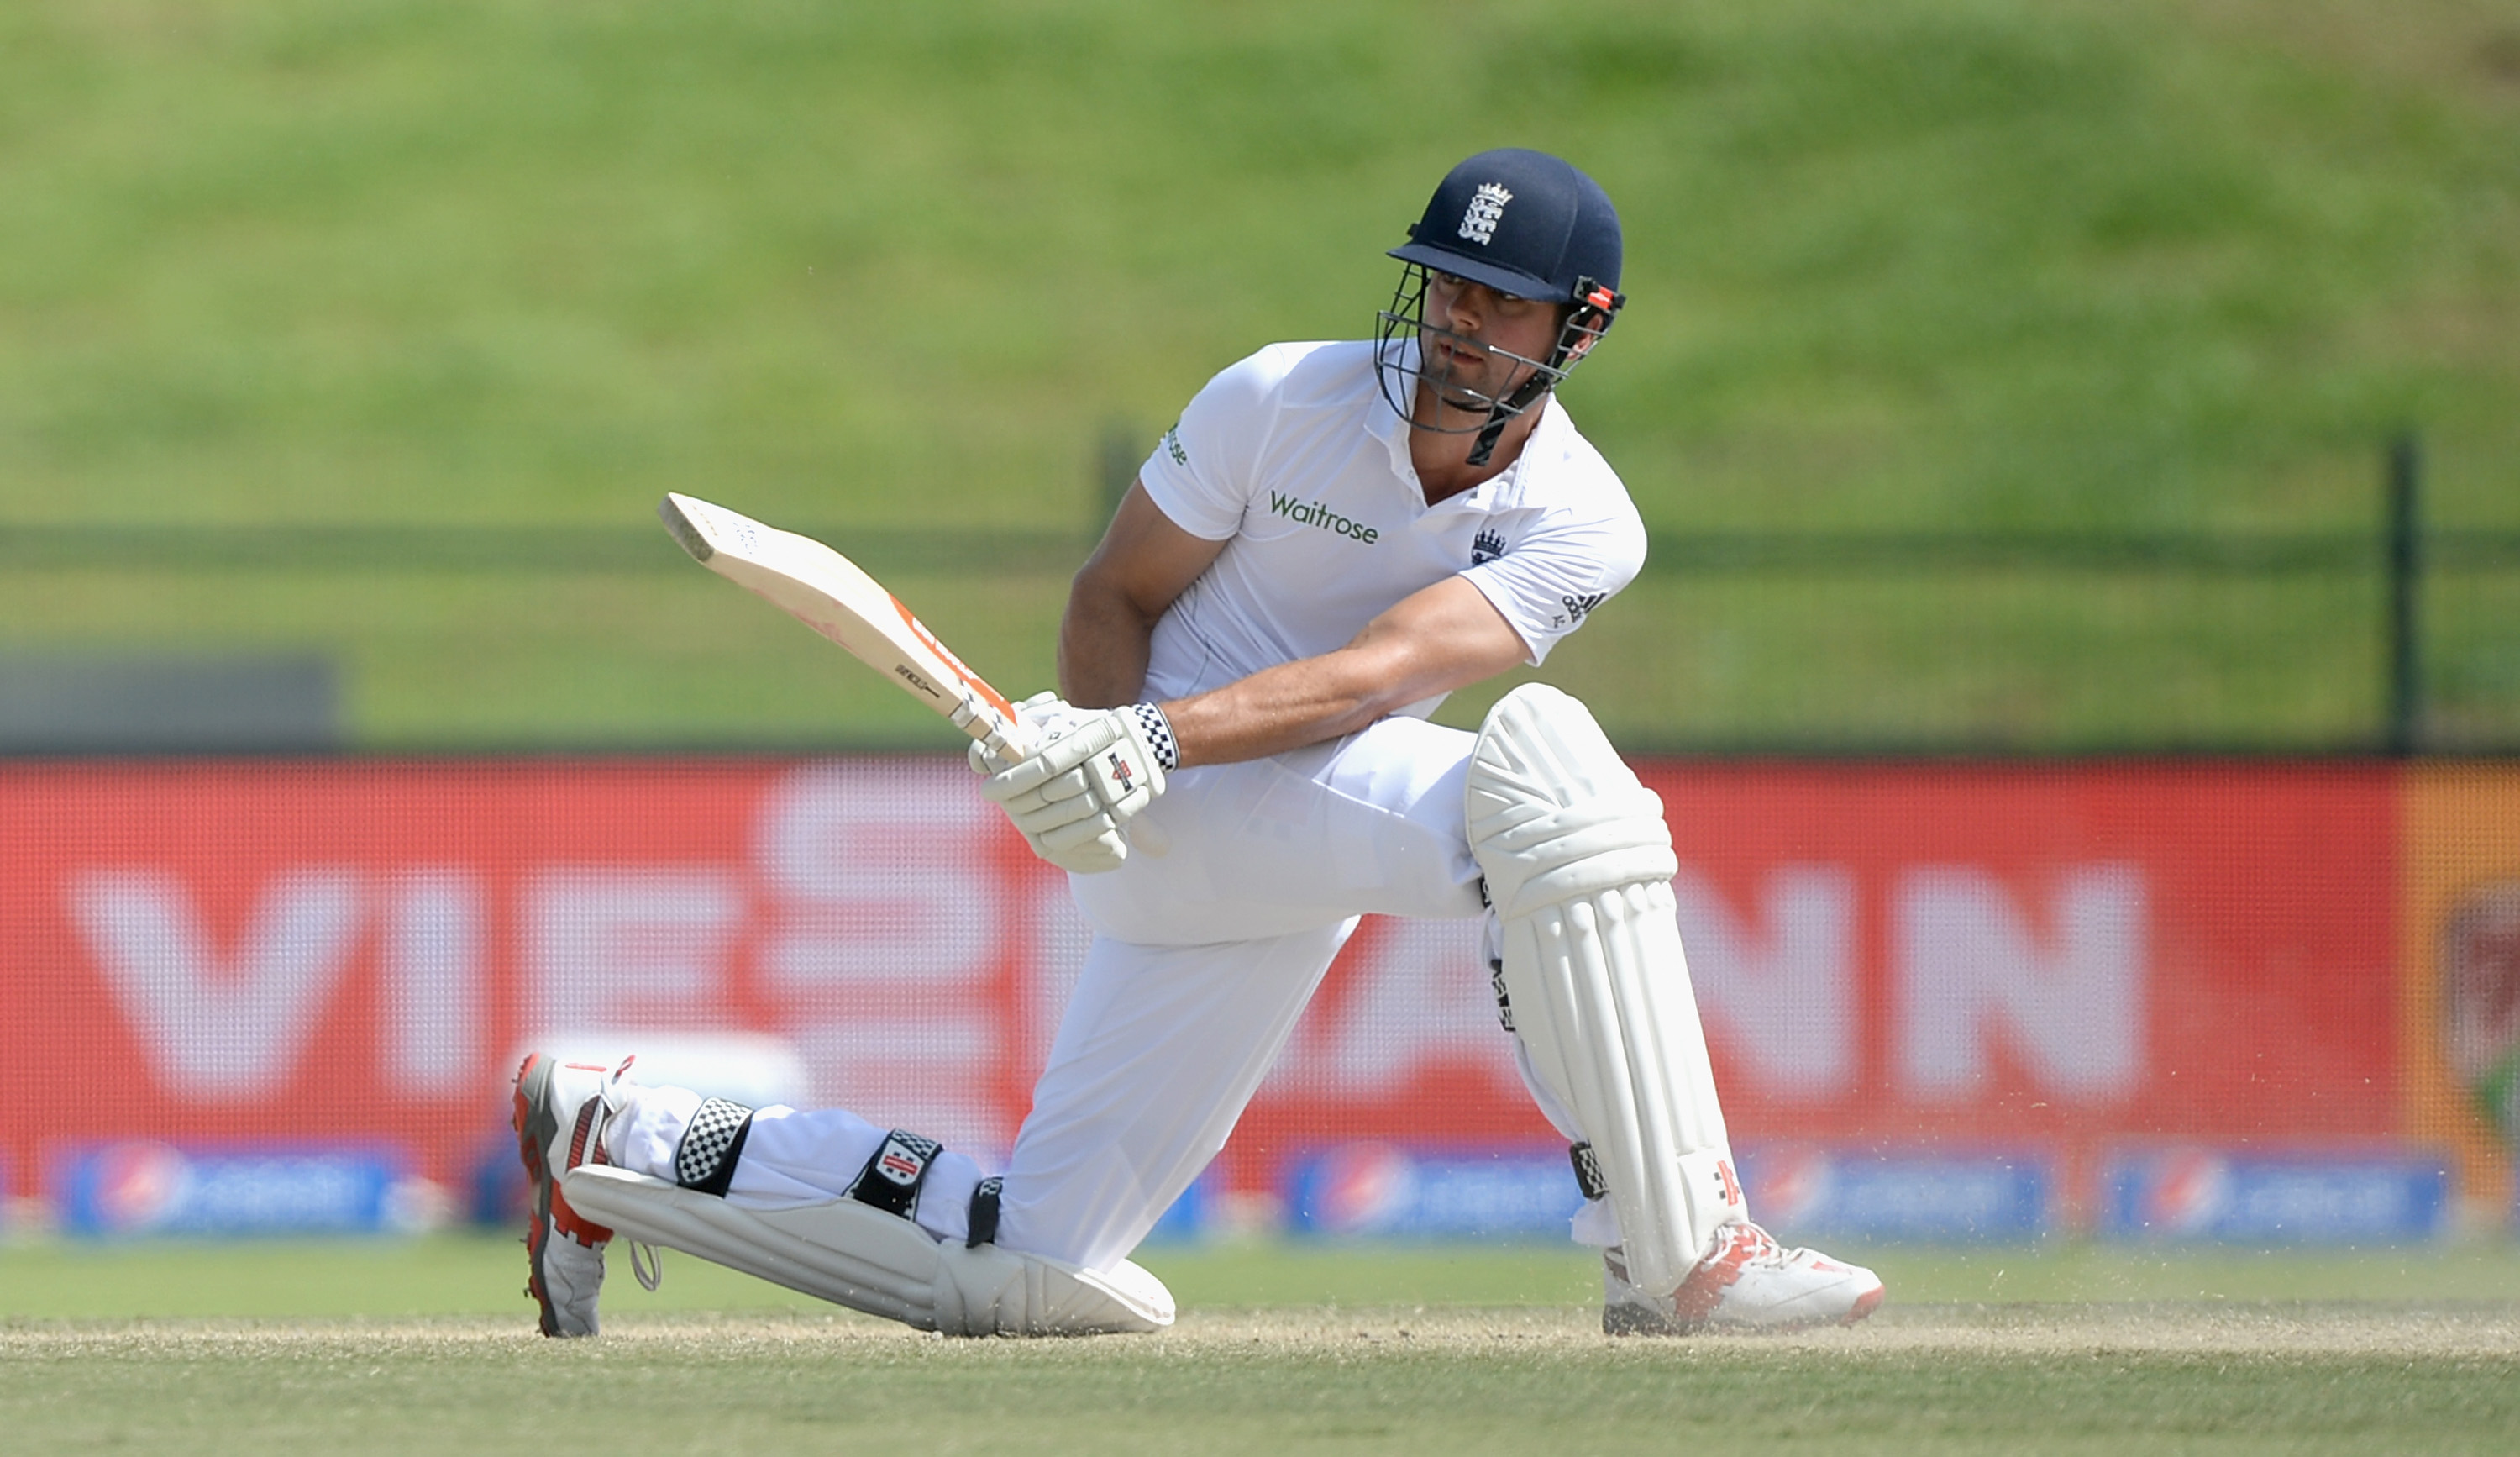 भारत A के खिलाफ एलिस्टर कुक ने जड़ा शतक, लेकिन उत्तर प्रदेश का ये गेंदबाज पड़ा भारी 10